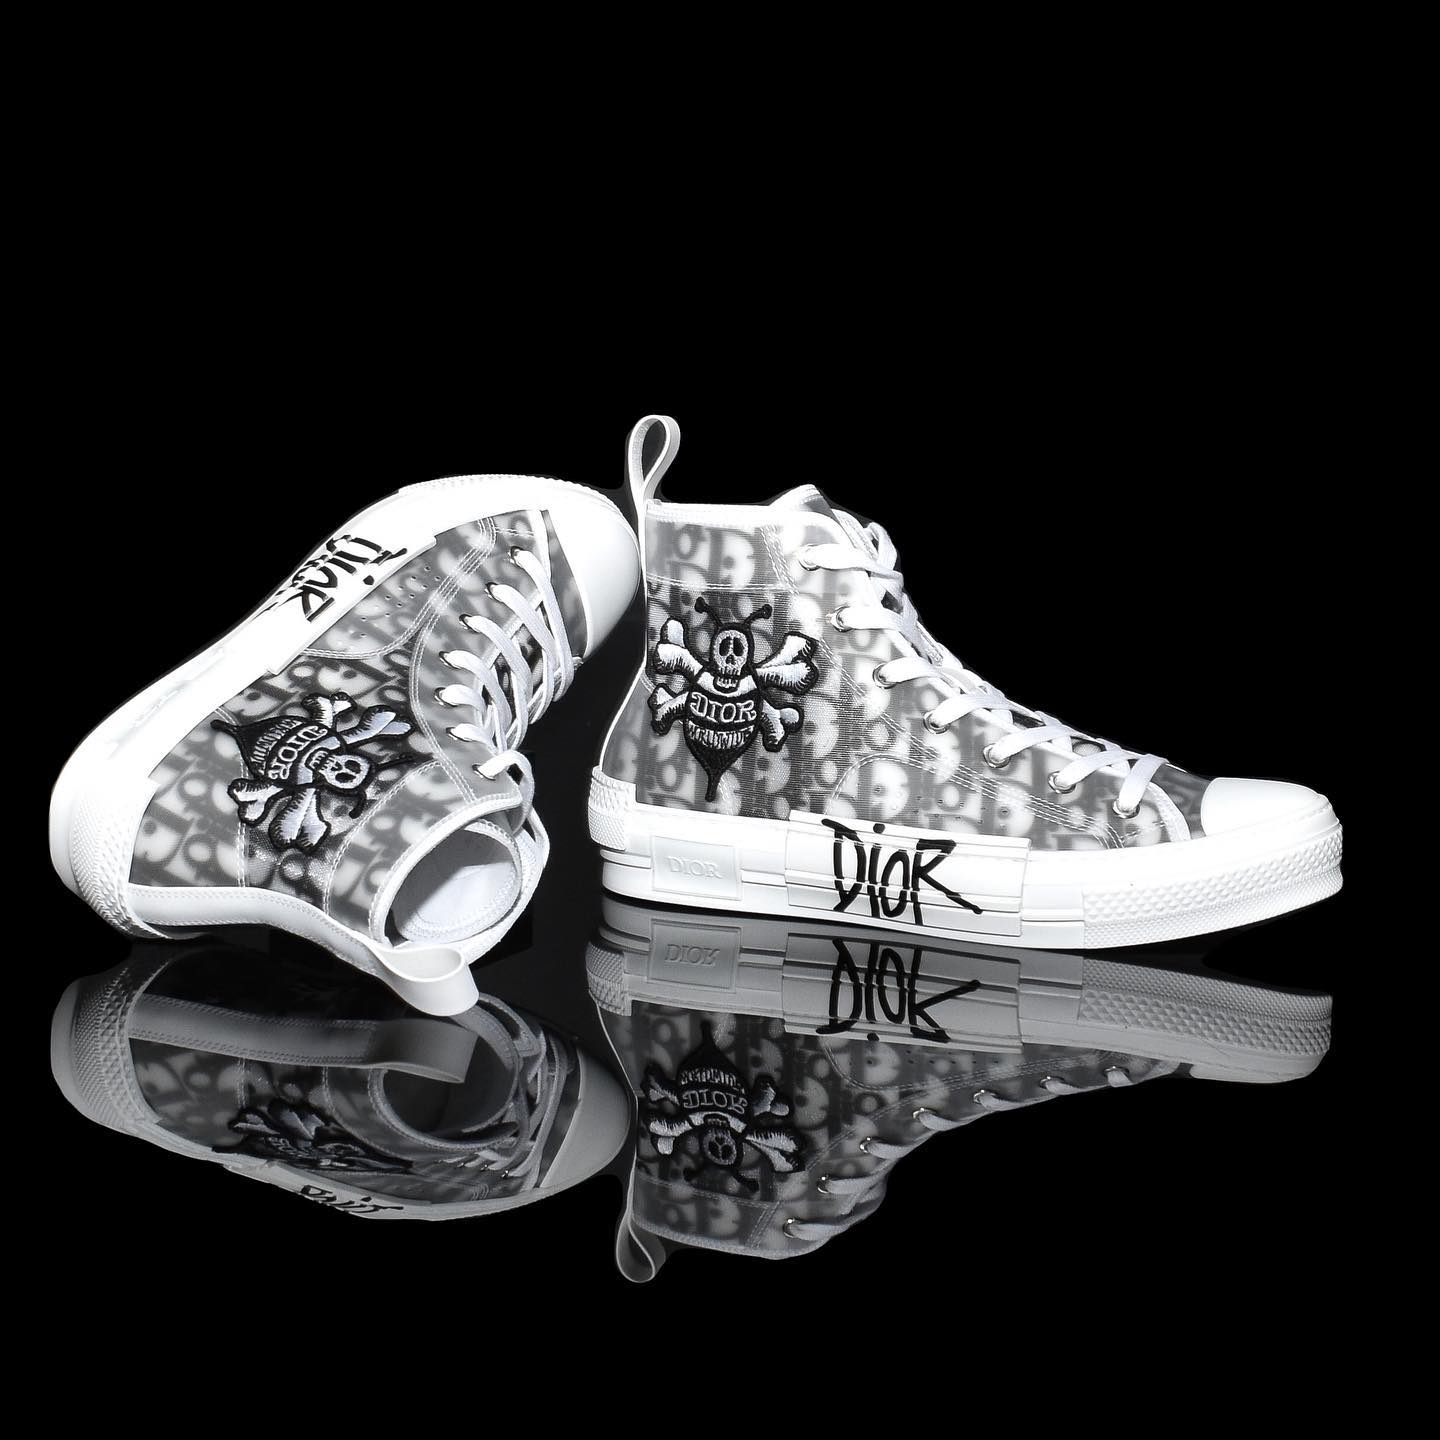 SNEAKER Dior SneakersFBDGFDGDFBFGFGFBBBBBB.jpg